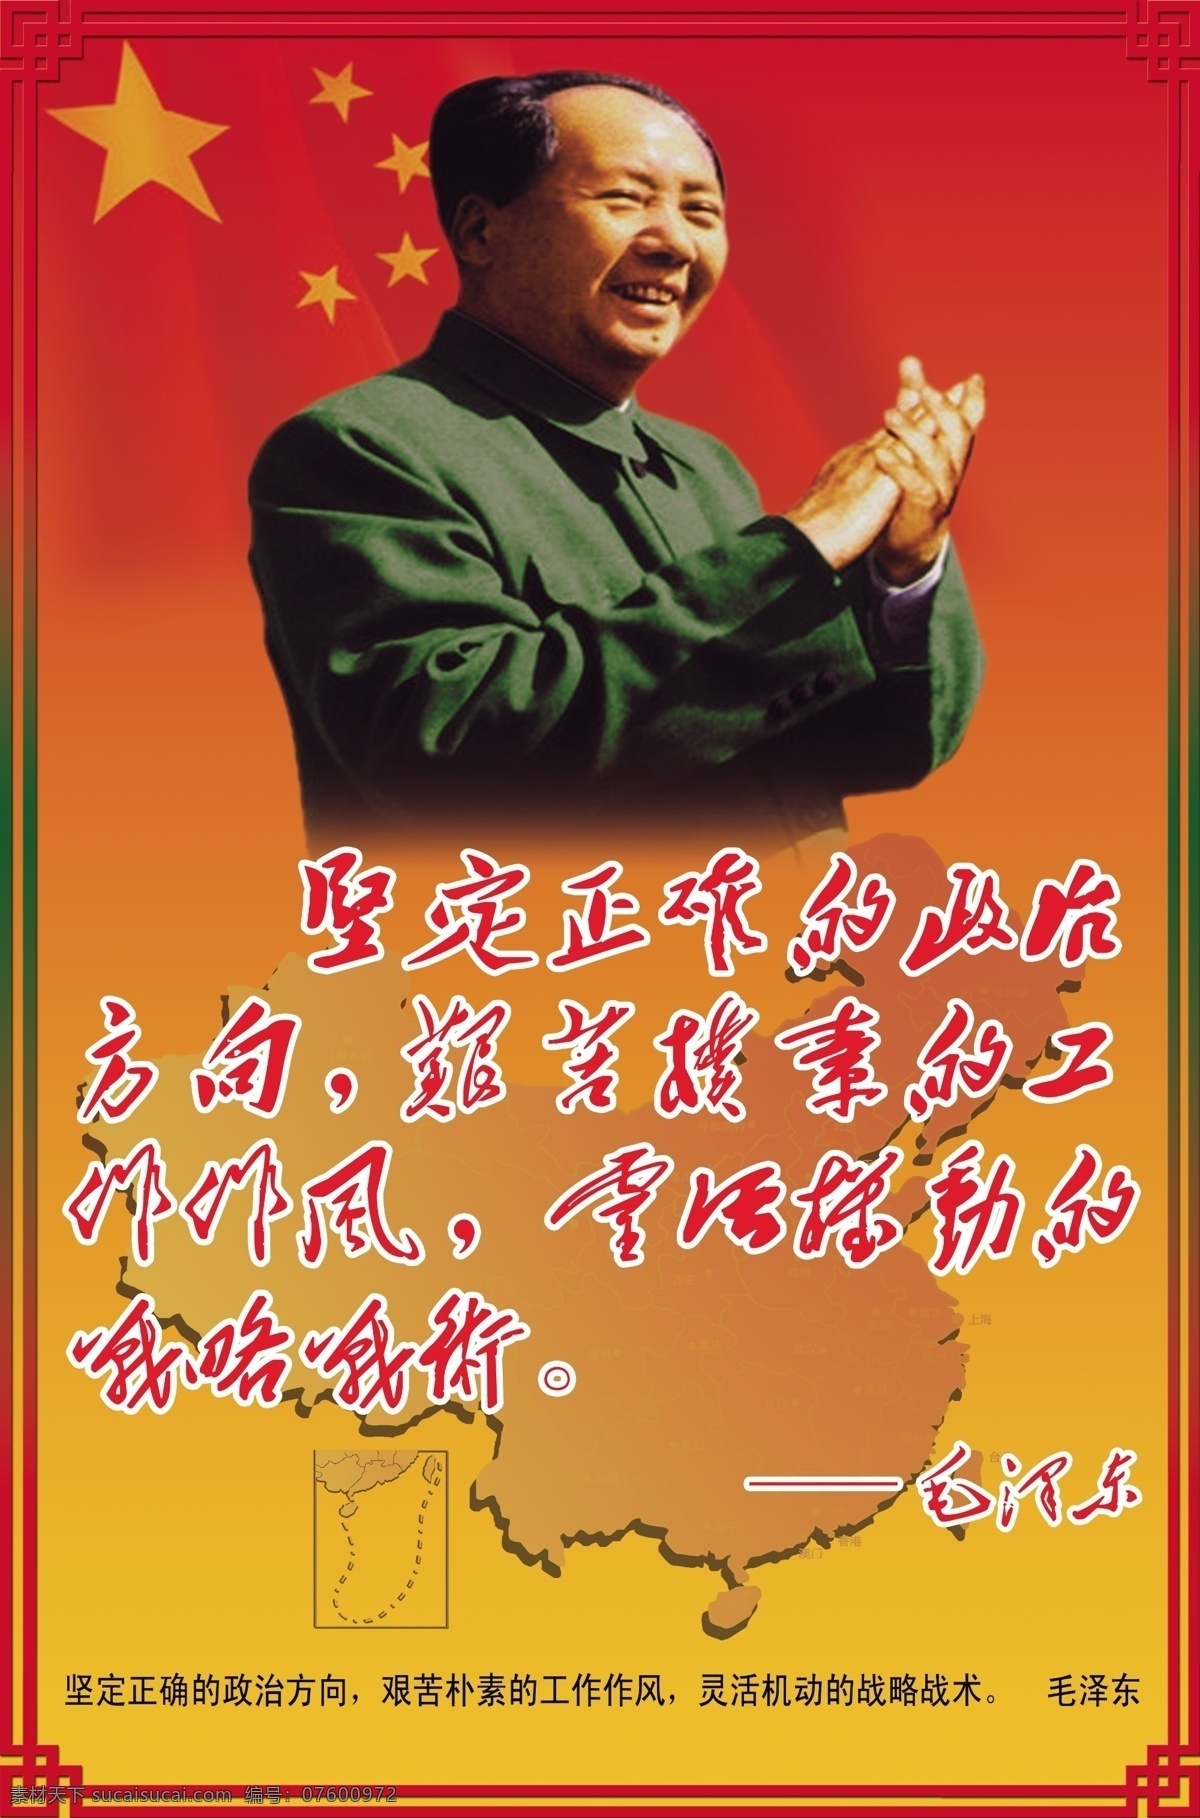 伟大 领袖 毛泽东 伟大领袖 毛泽东像 毛主席 领袖像